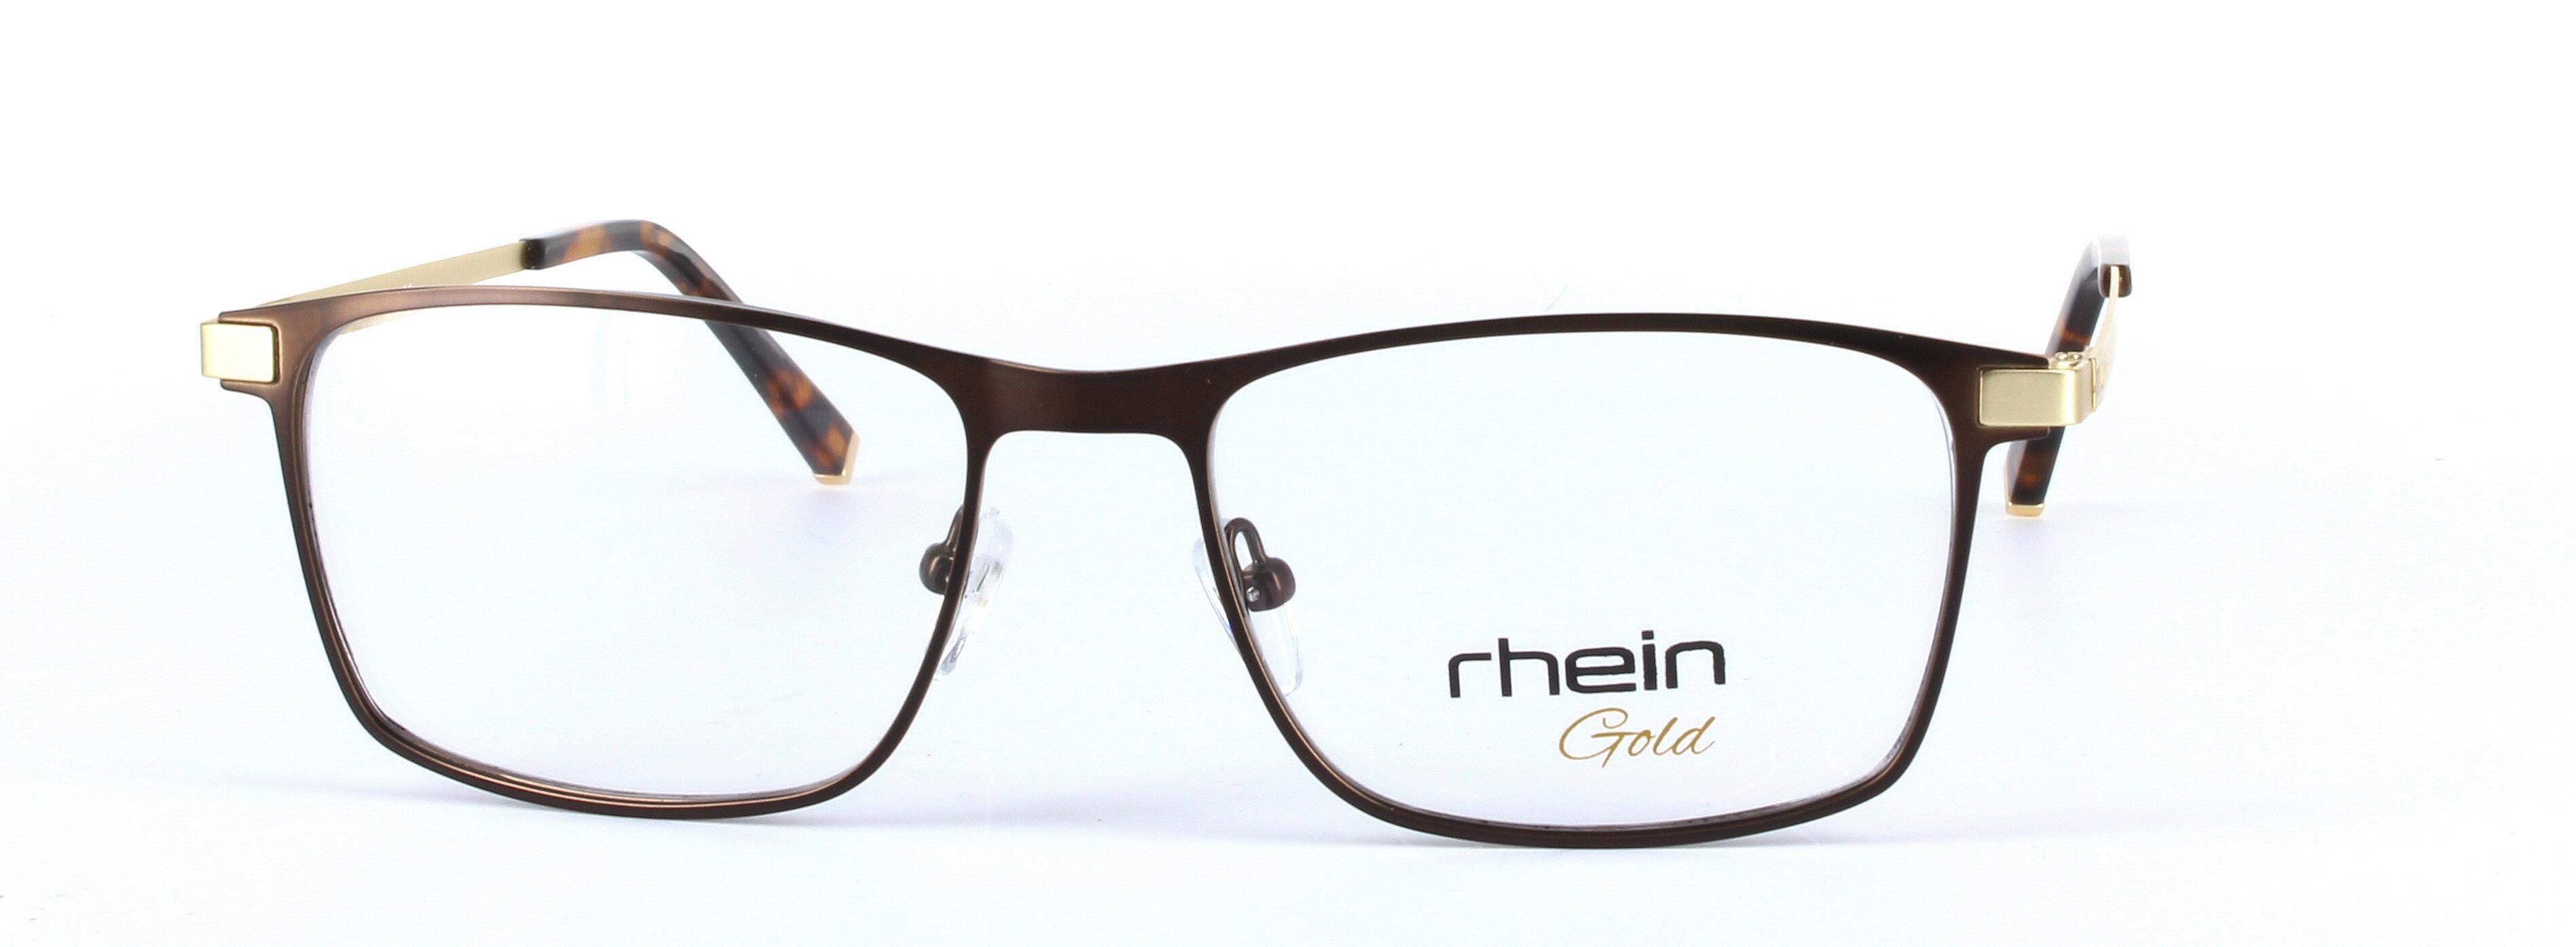 Adam Gunmetal Oval Rectangular Metal Glasses - Image View 5